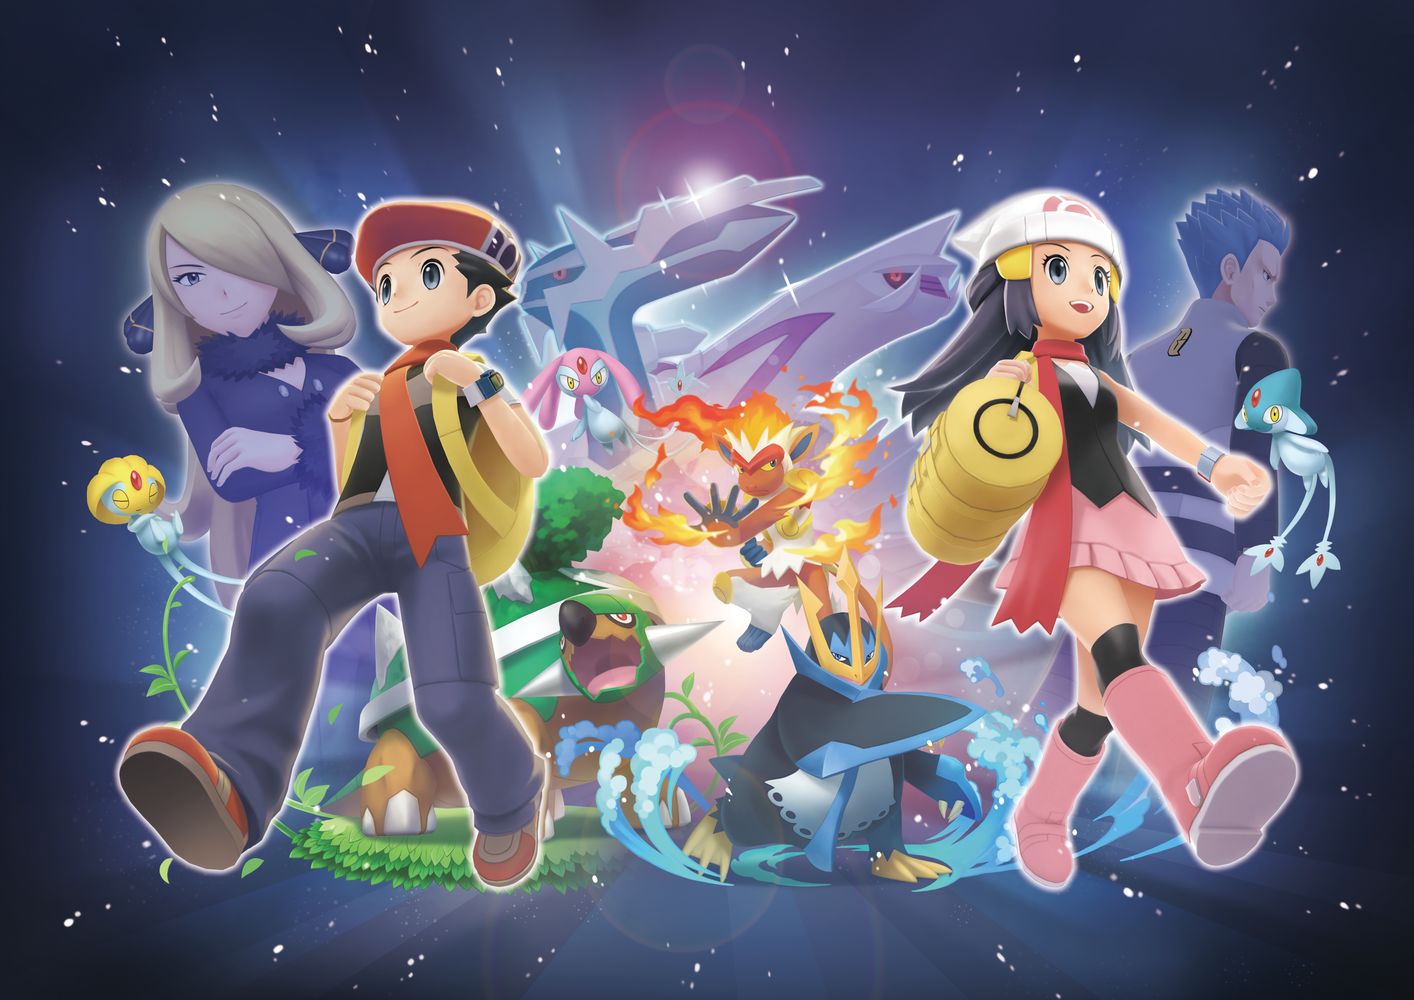 Leggende Pokémon: Arceus, il titolo aggiornato alla versione 1.1.0 su  Nintendo Switch